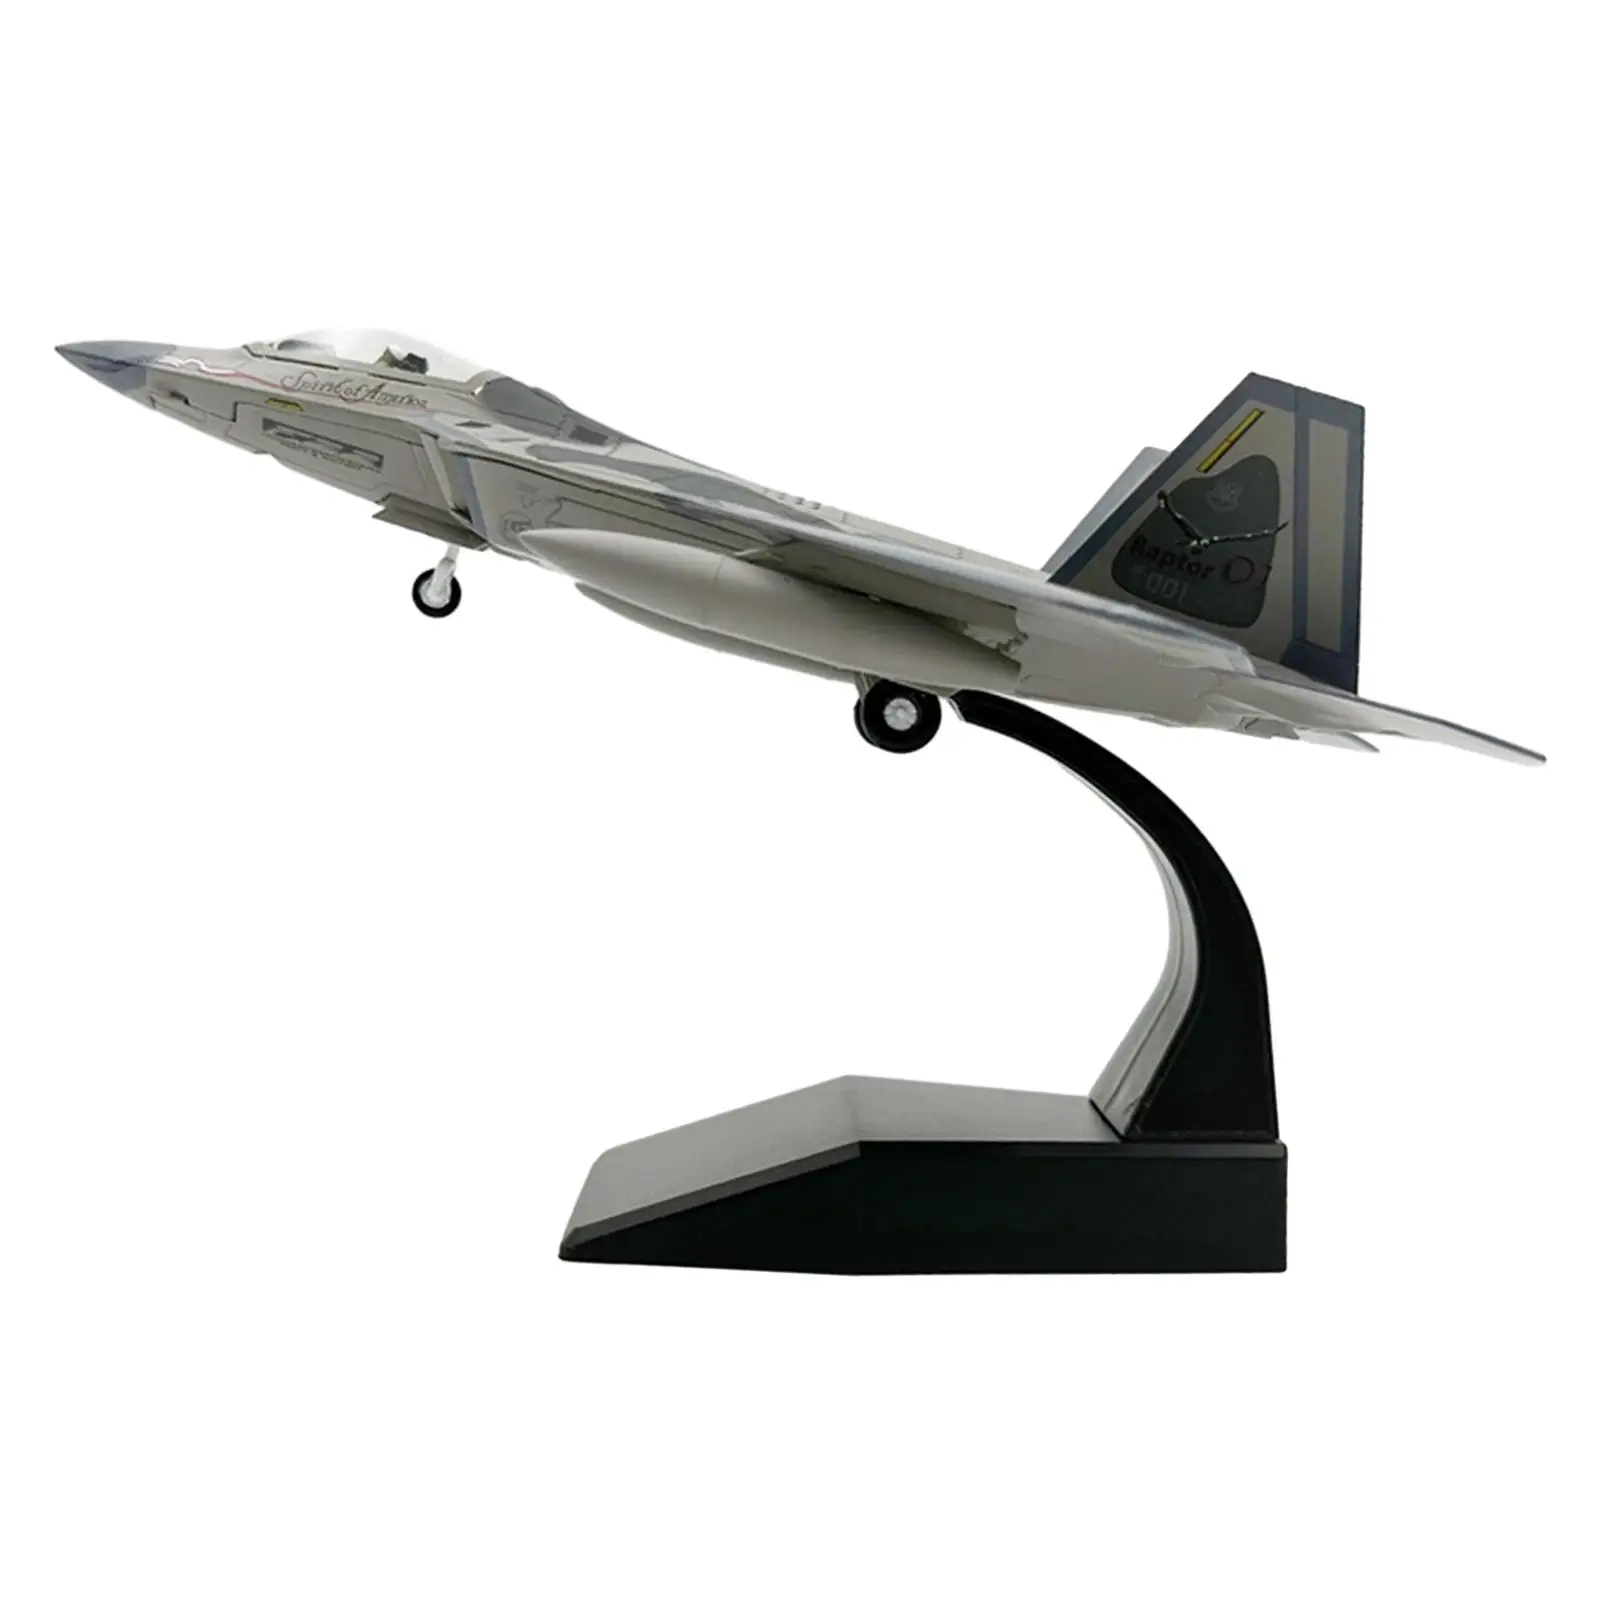 

Модель самолета в масштабе 1/100, литая металлическая модель самолета, сувенирное украшение для шкафа, спальни, бара, дома, кафе